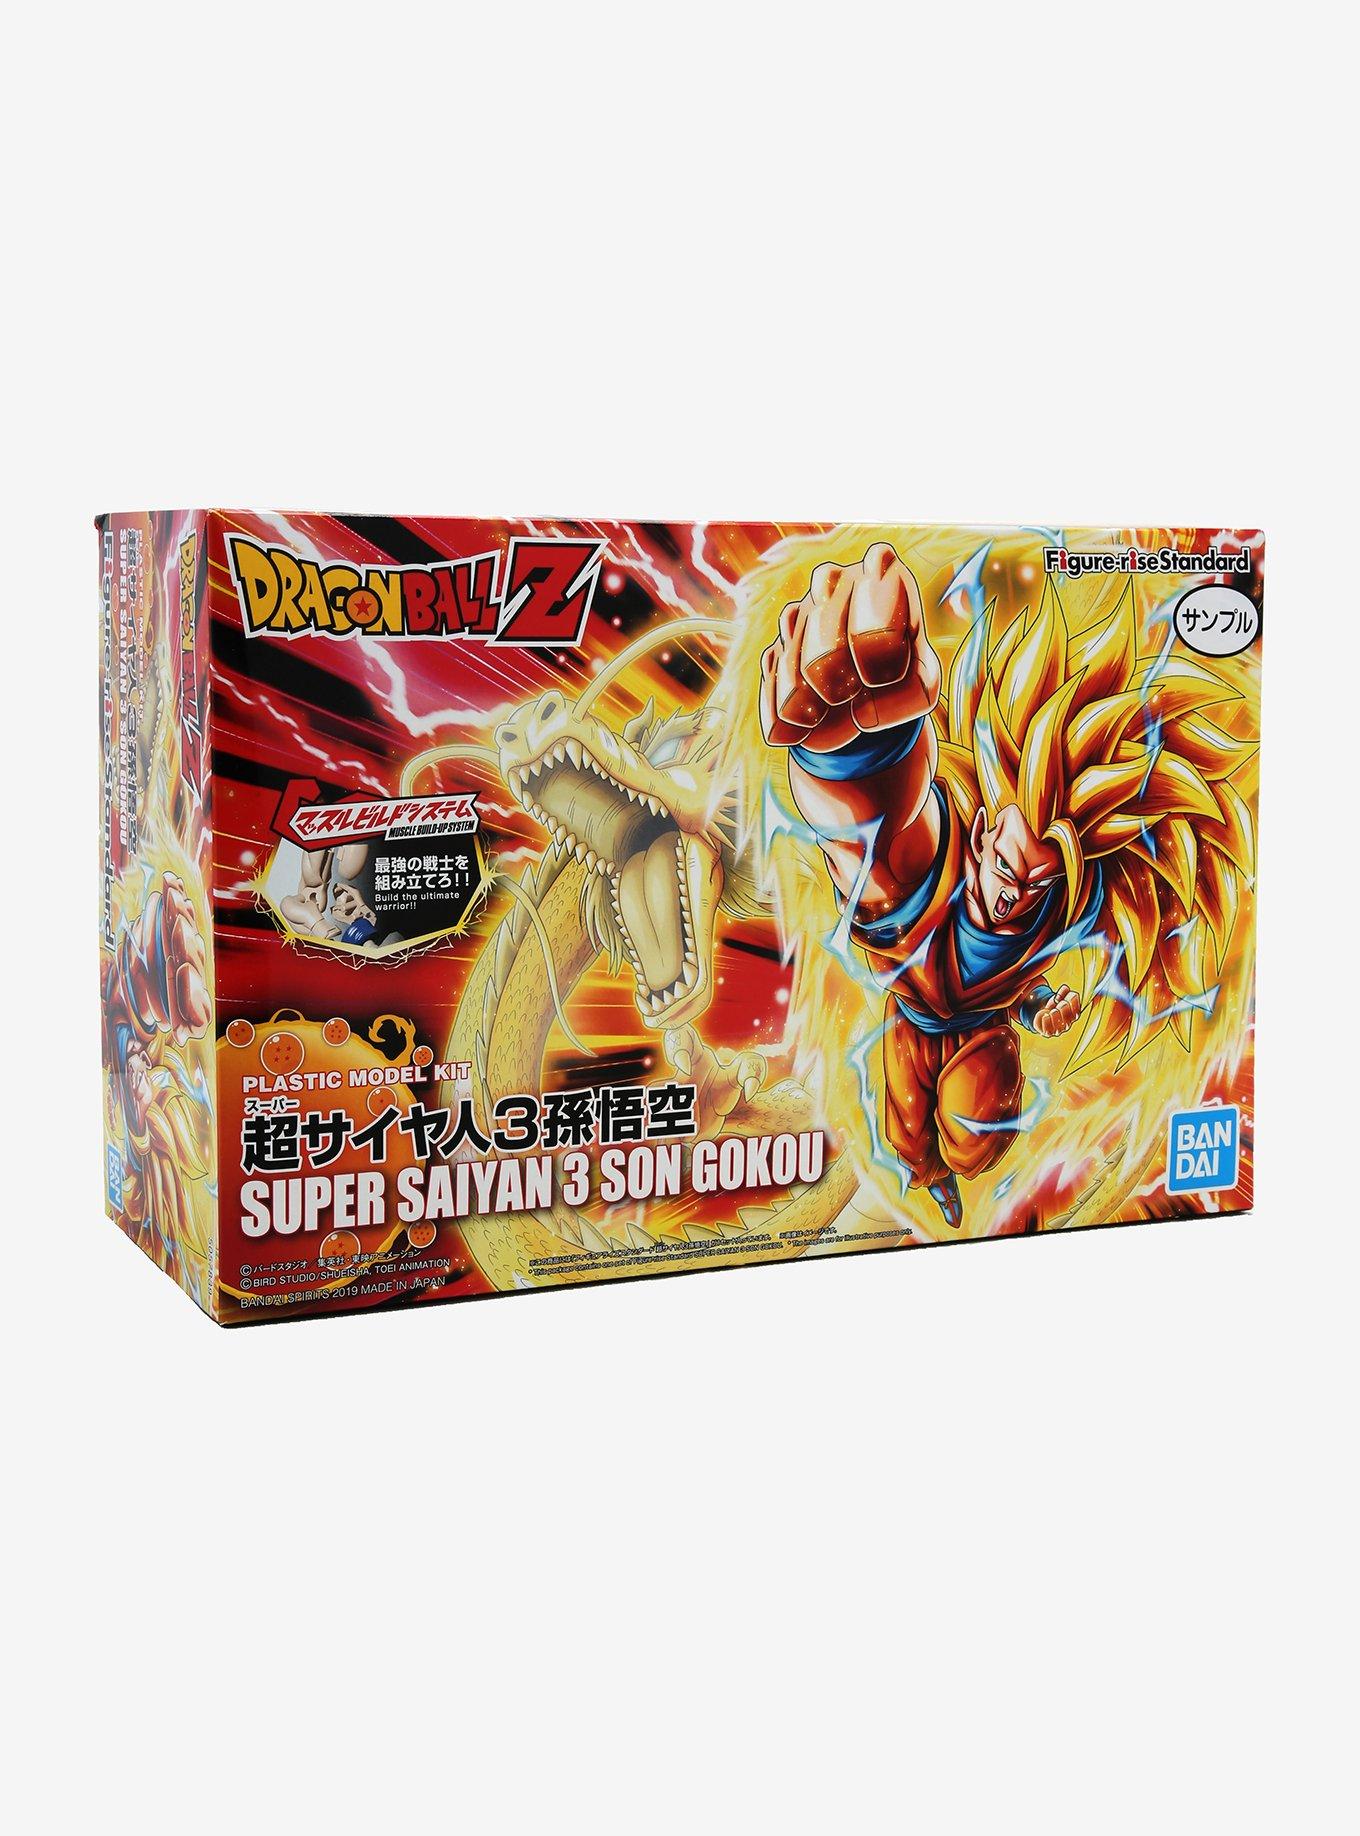 Bandai Figure-Rise Standard Dragon Ball Z Super Saiyan 3 Goku